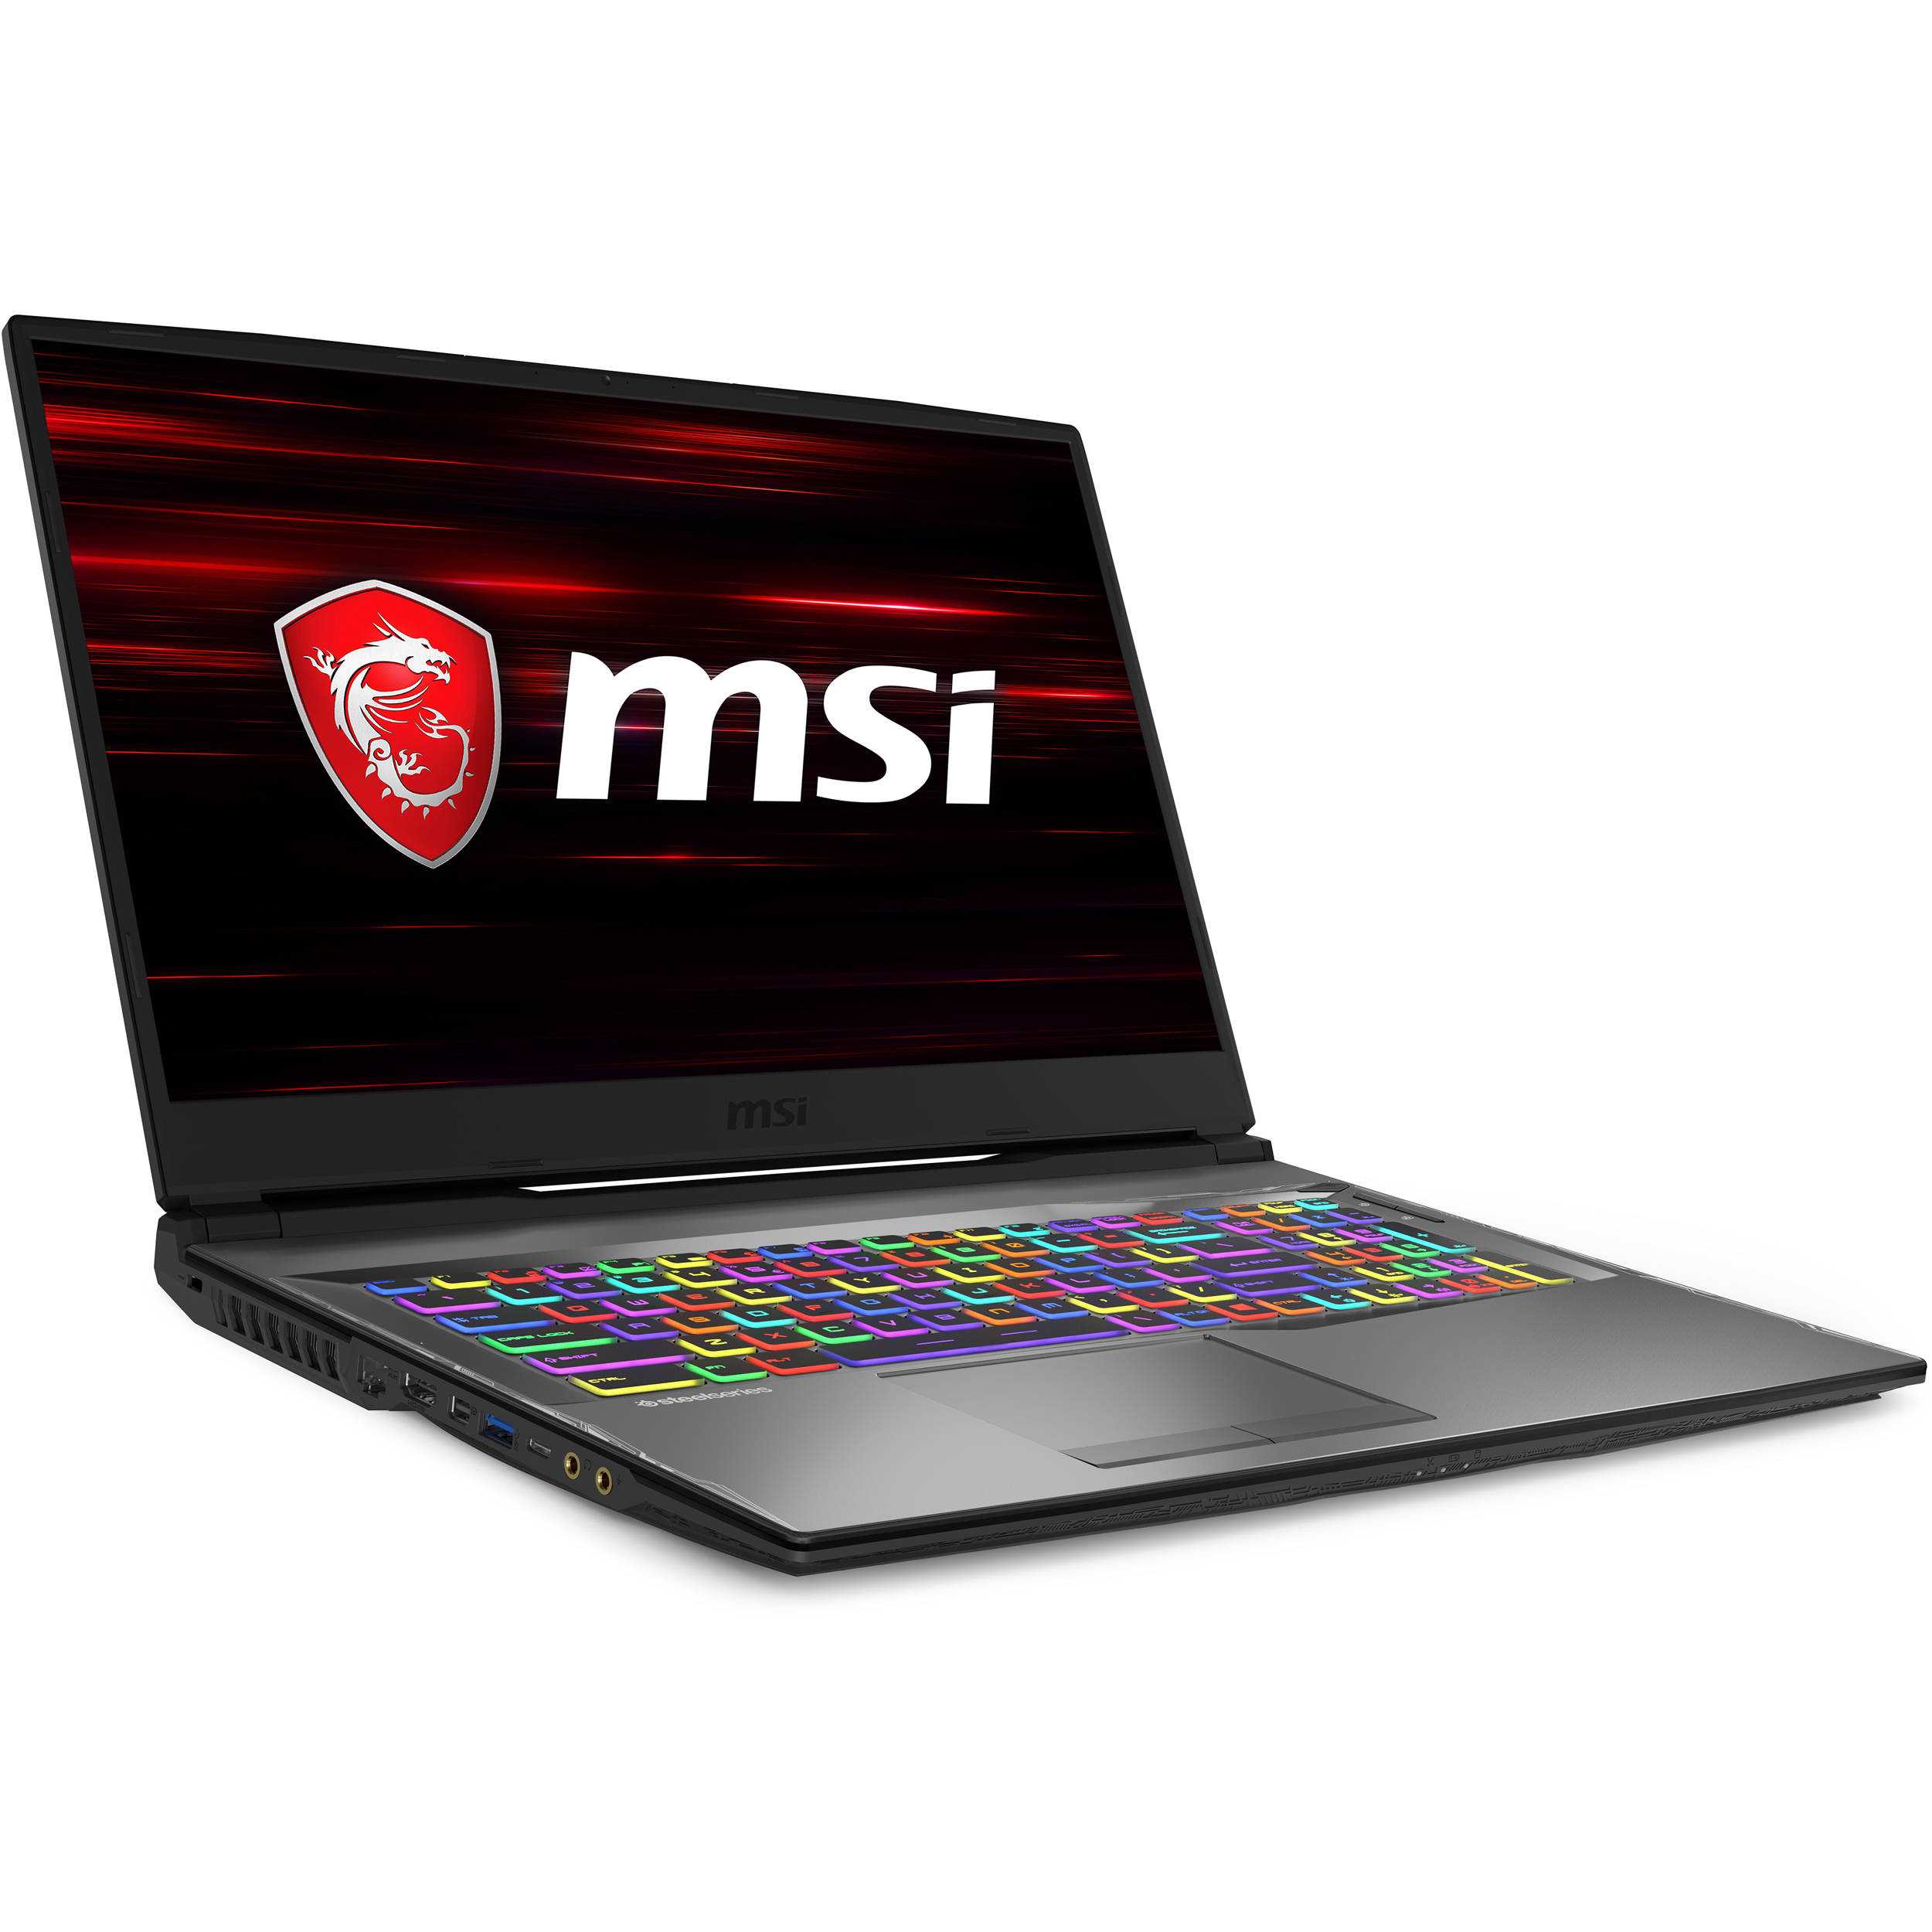 Msi gp70 (gp702od-054xua) ᐈ нужно купить  ноутбук?